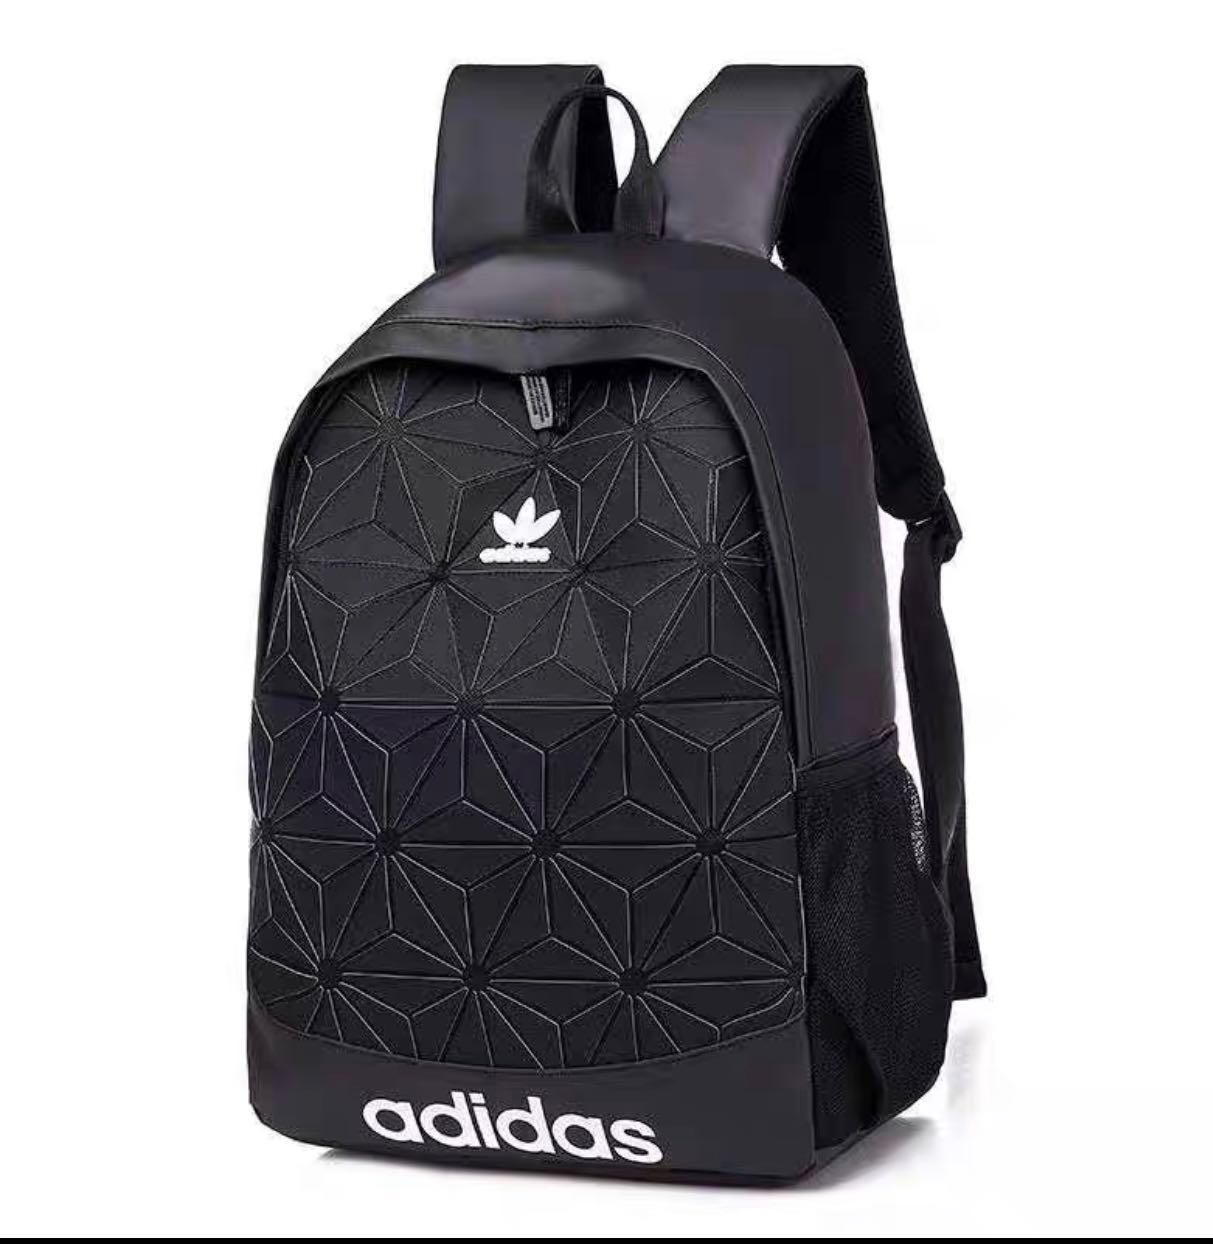 adidas new bag 2019